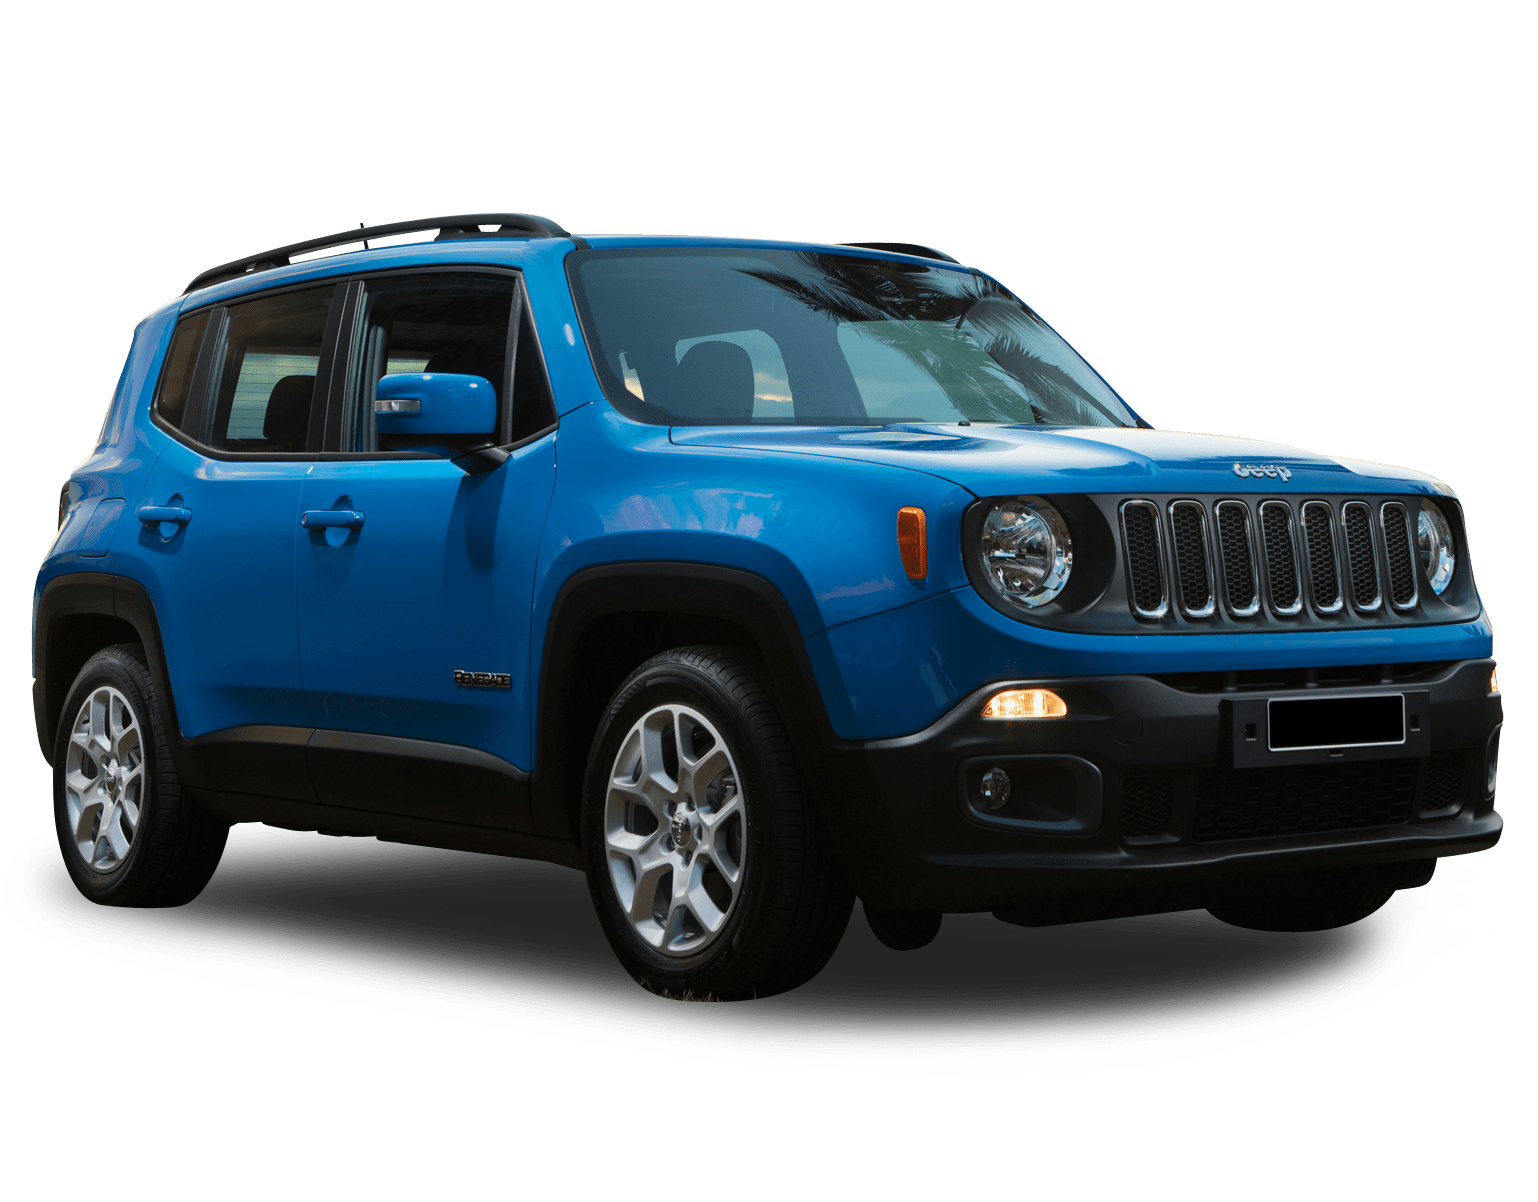 Jeep Renegade Sales Figures